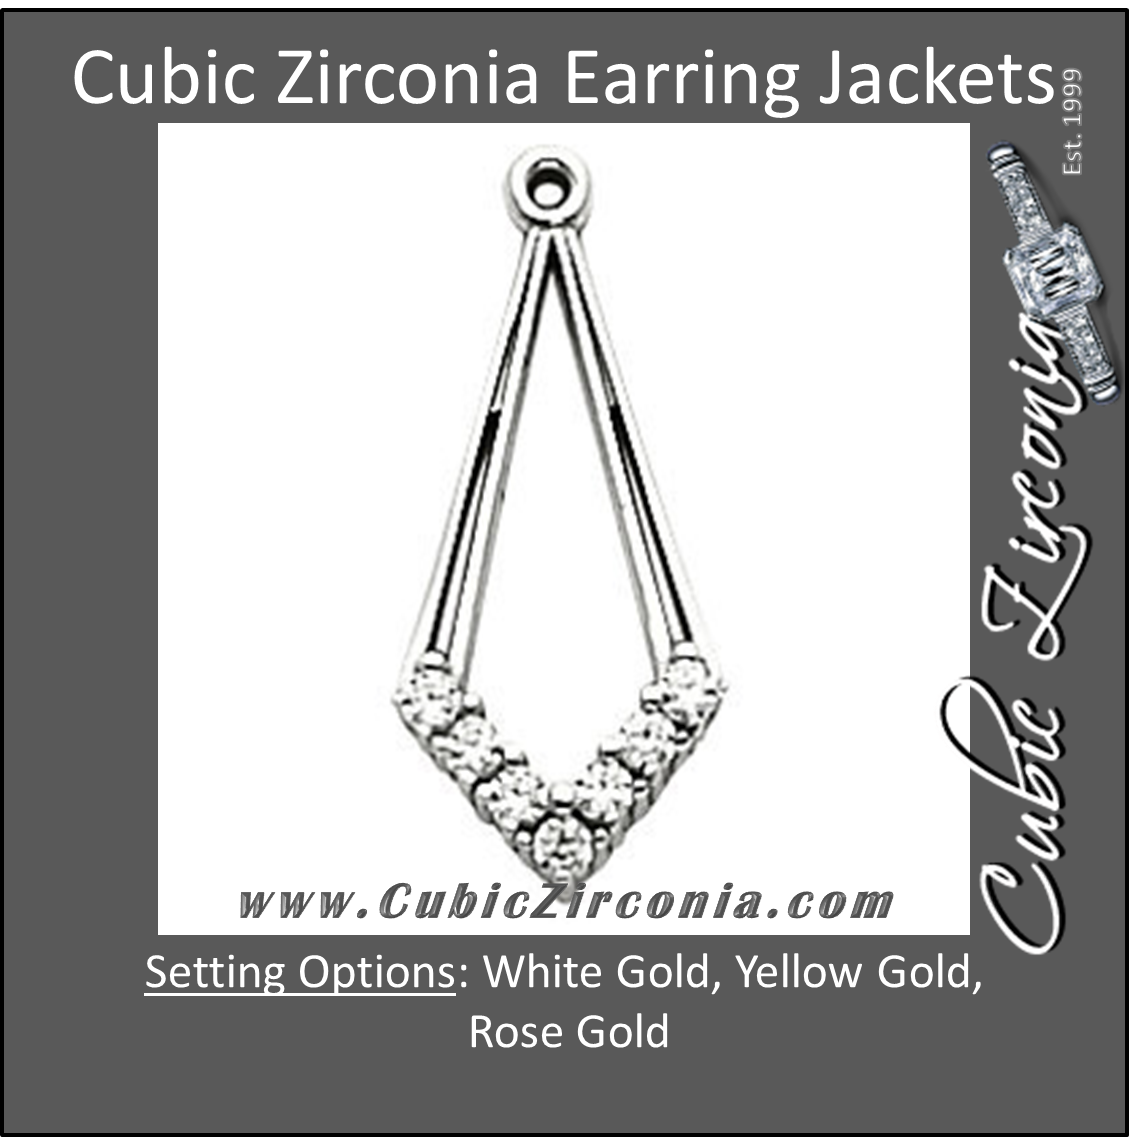 Cubic Zirconia Earrings- 0.28 Carat Diamond-Shaped Earring Jacket Set